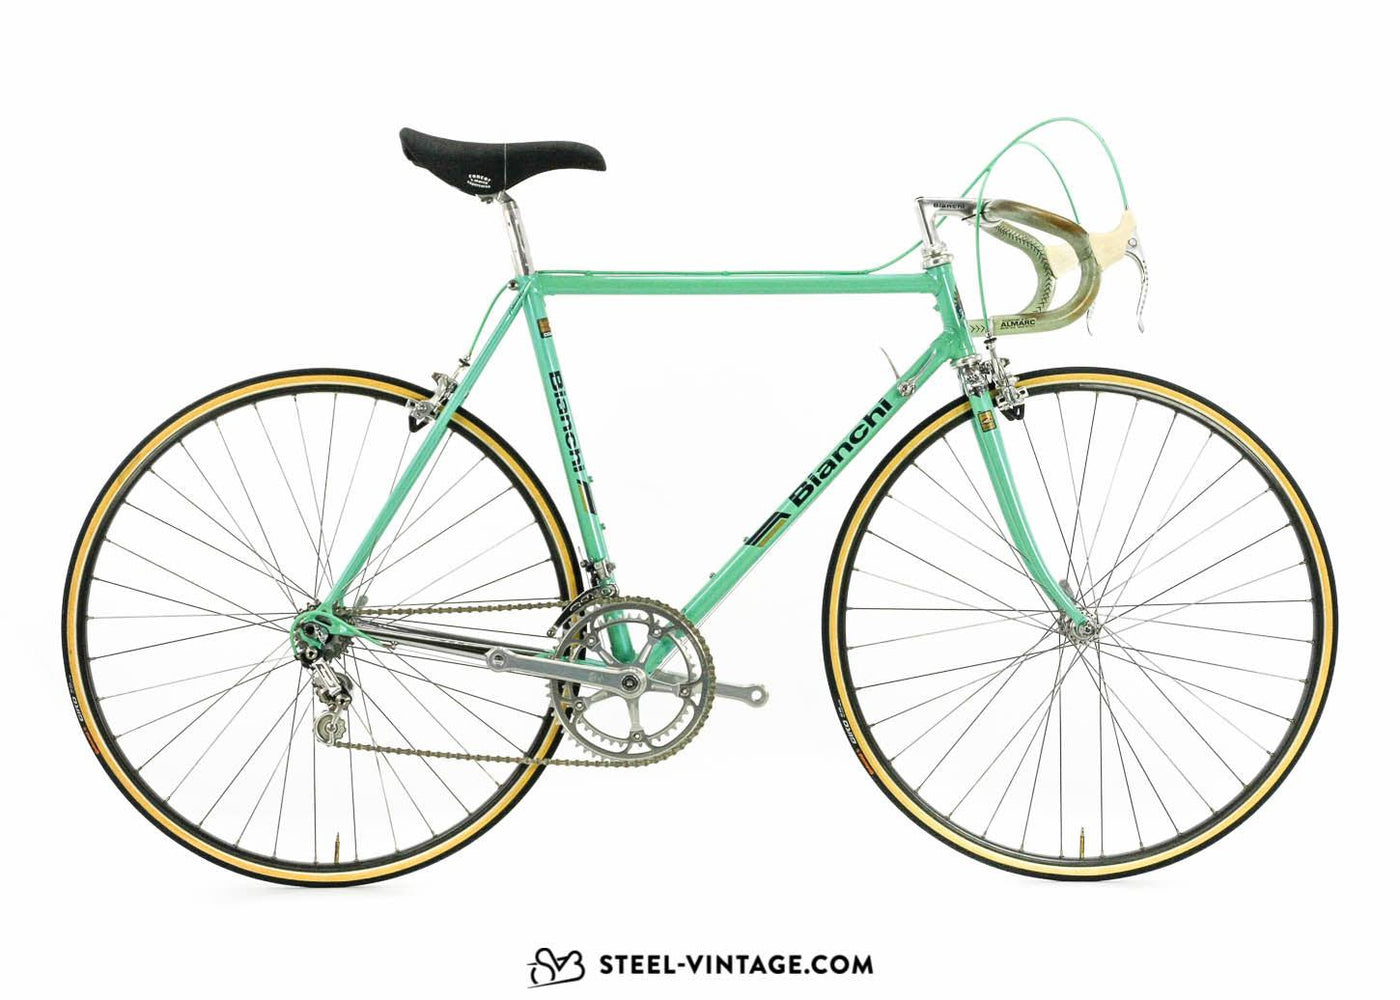 Bianchi Specialissima Reparto Corse 1986 - Steel Vintage Bikes